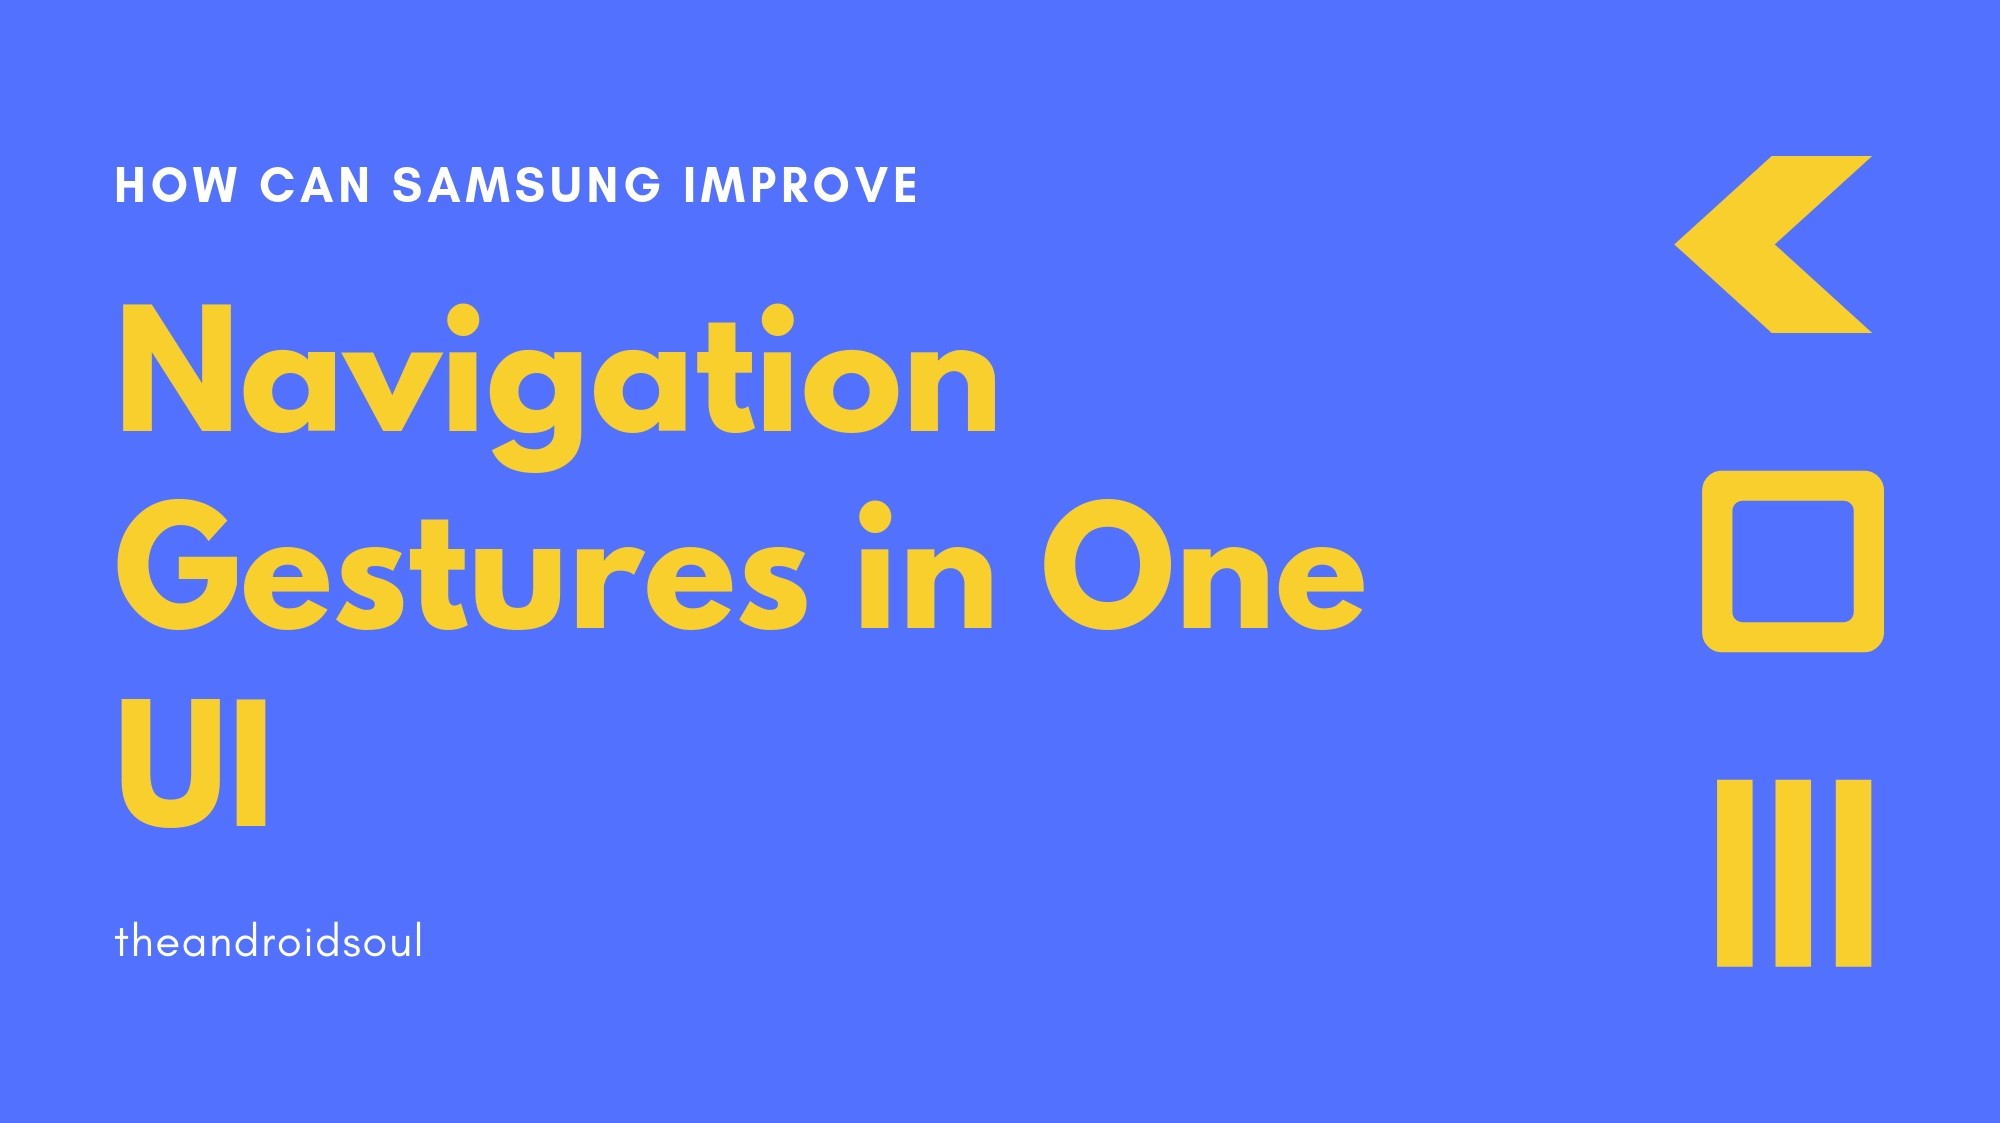 Cómo Samsung puede mejorar los gestos de navegación en One UI